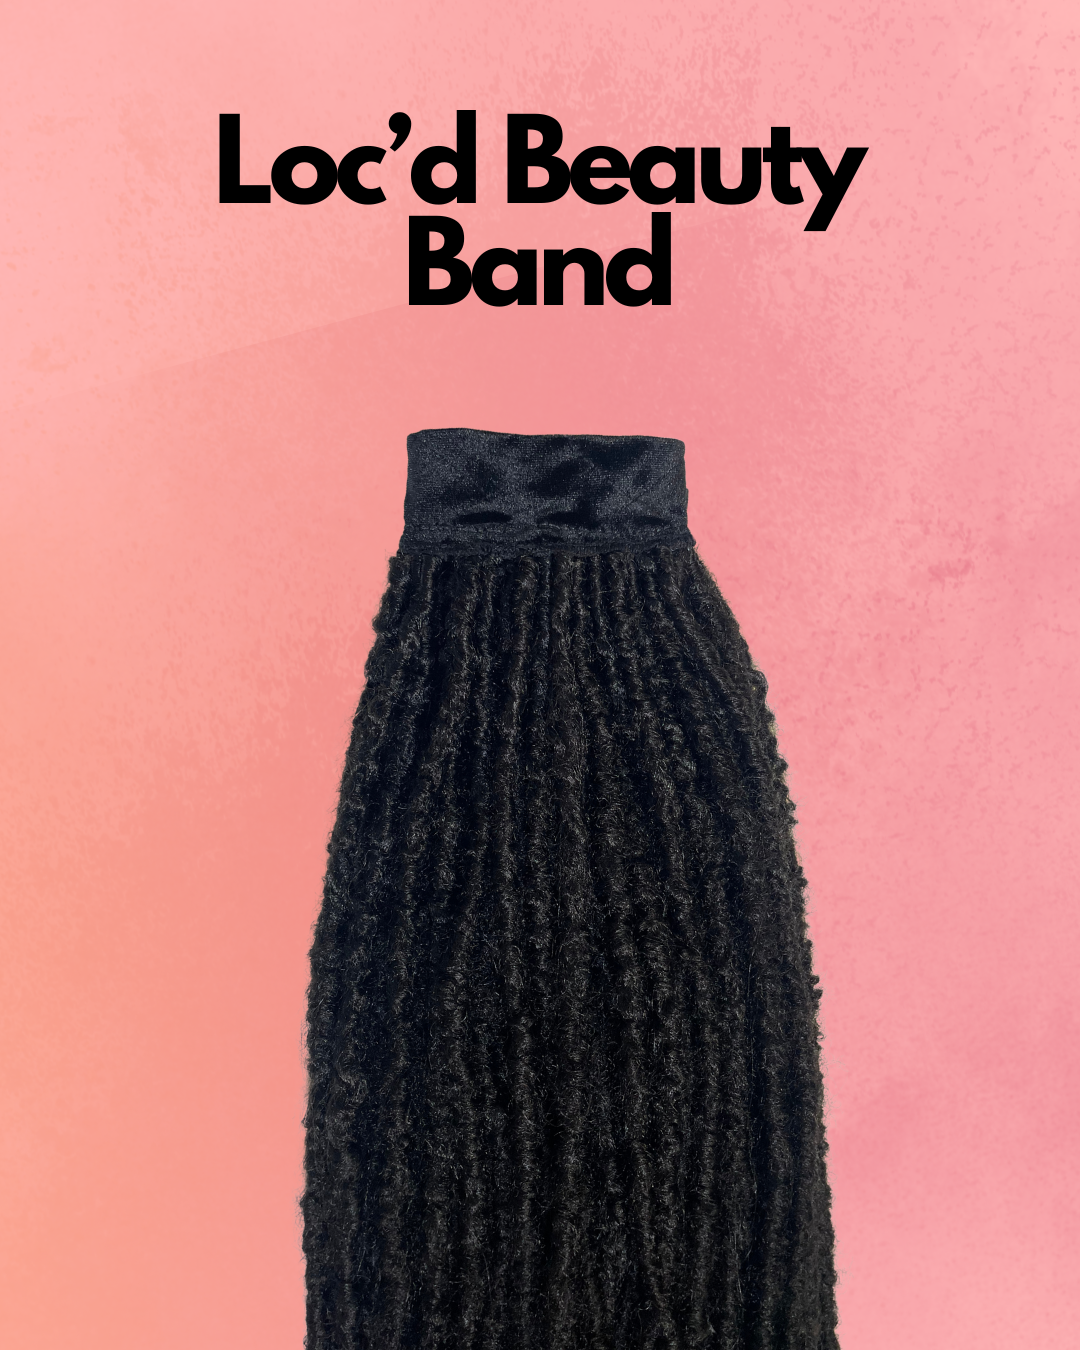 Loc'd Beauty Band